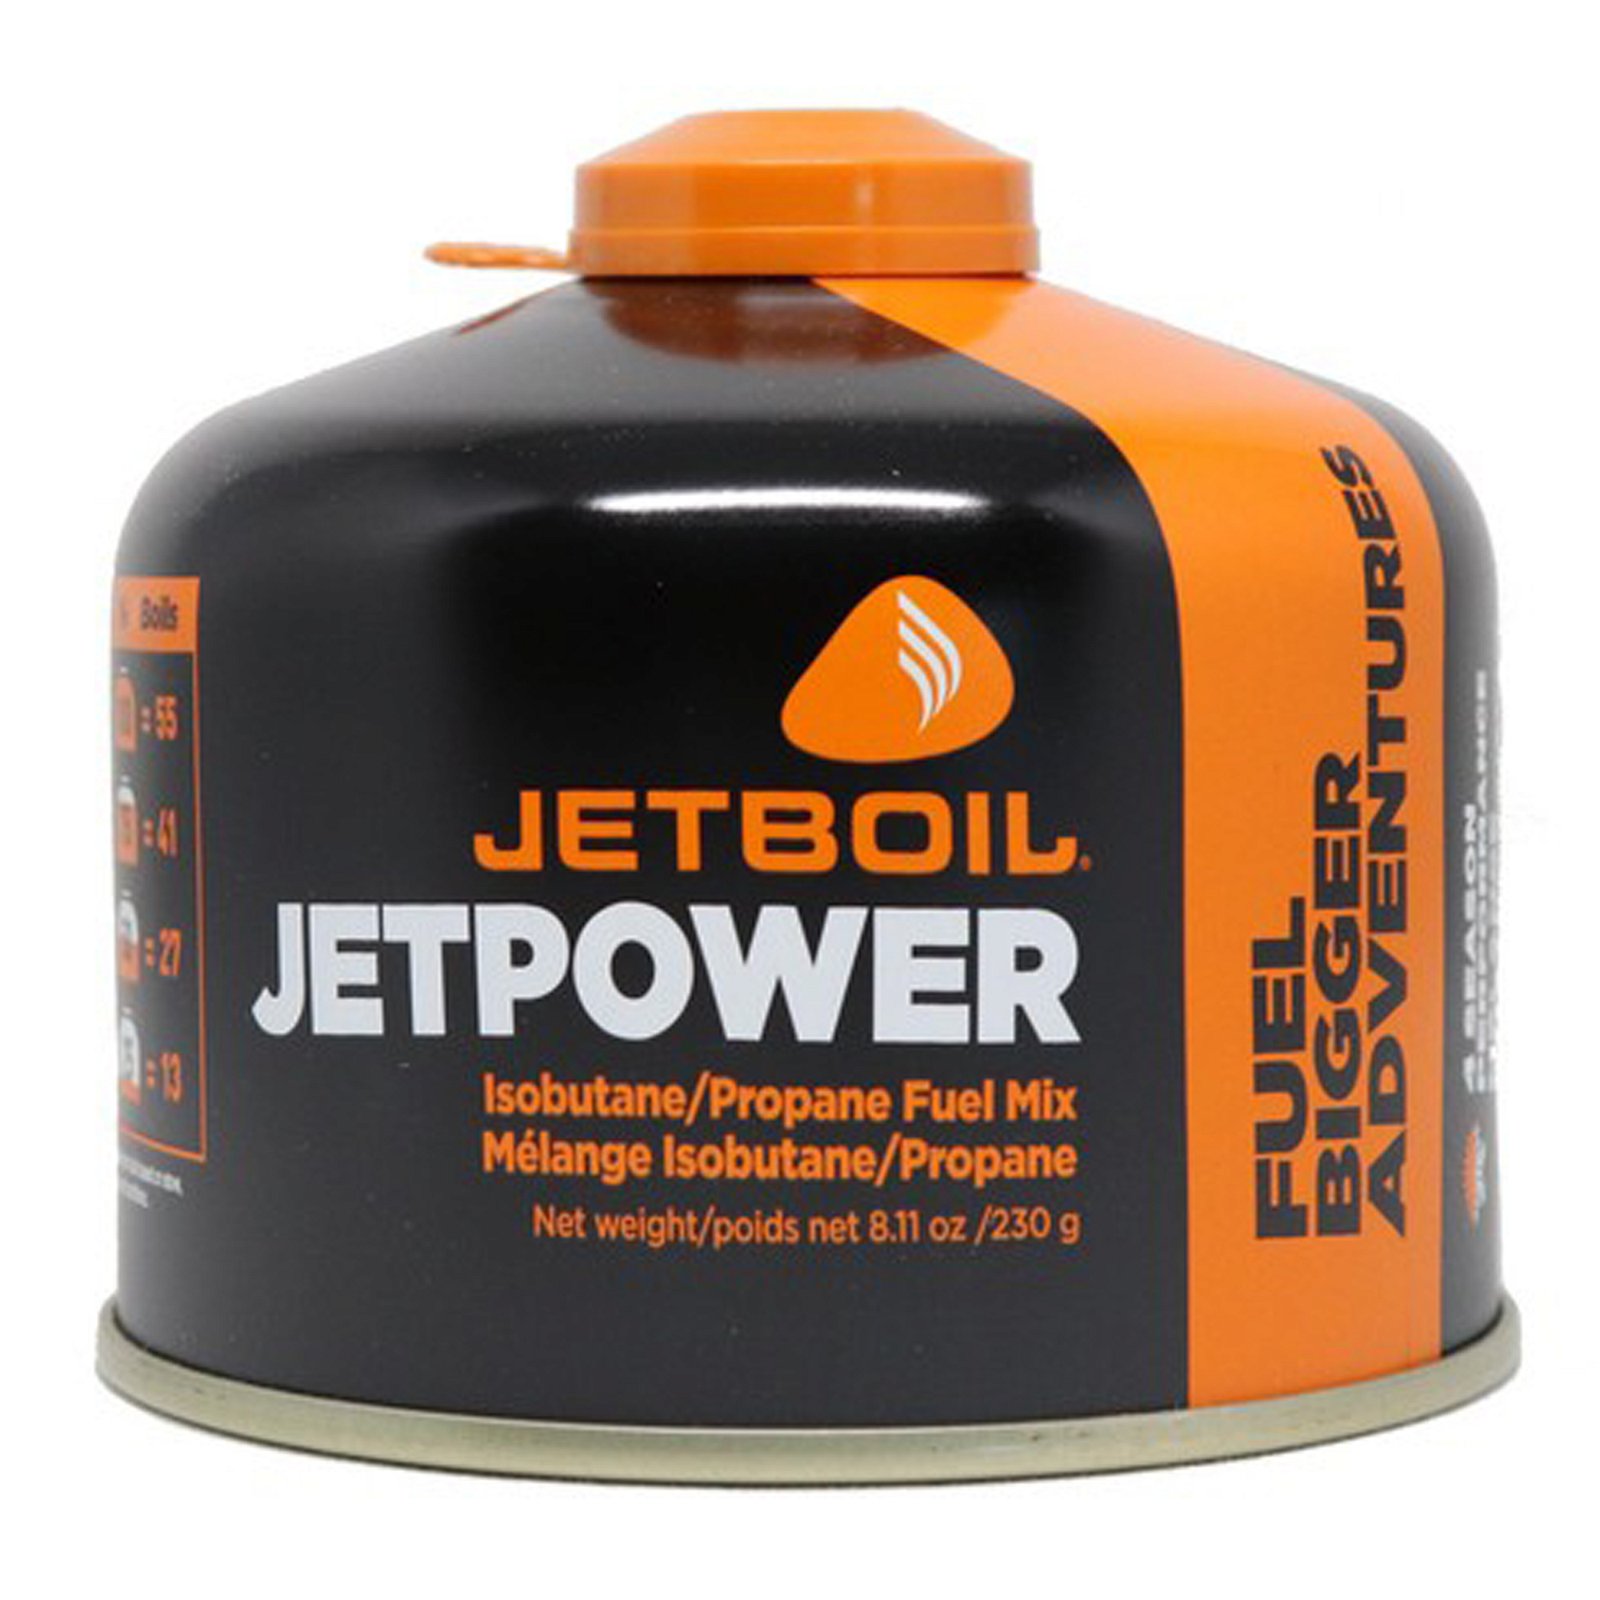 Jetboil Jetpower Gass 230g